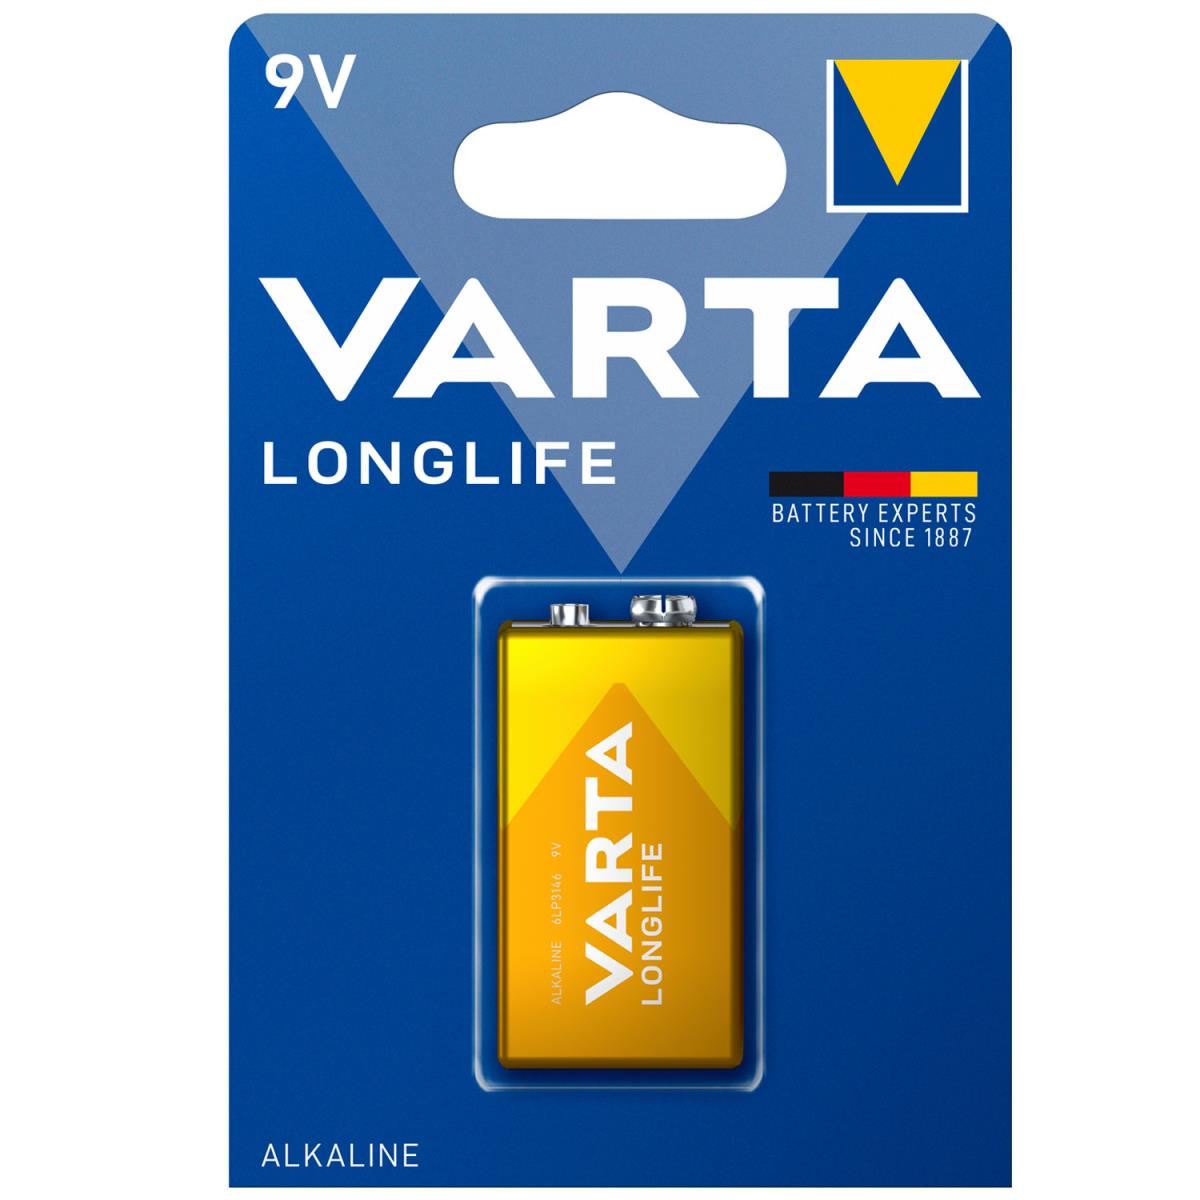 Varta: Longlife 9V Batteri 1-pack